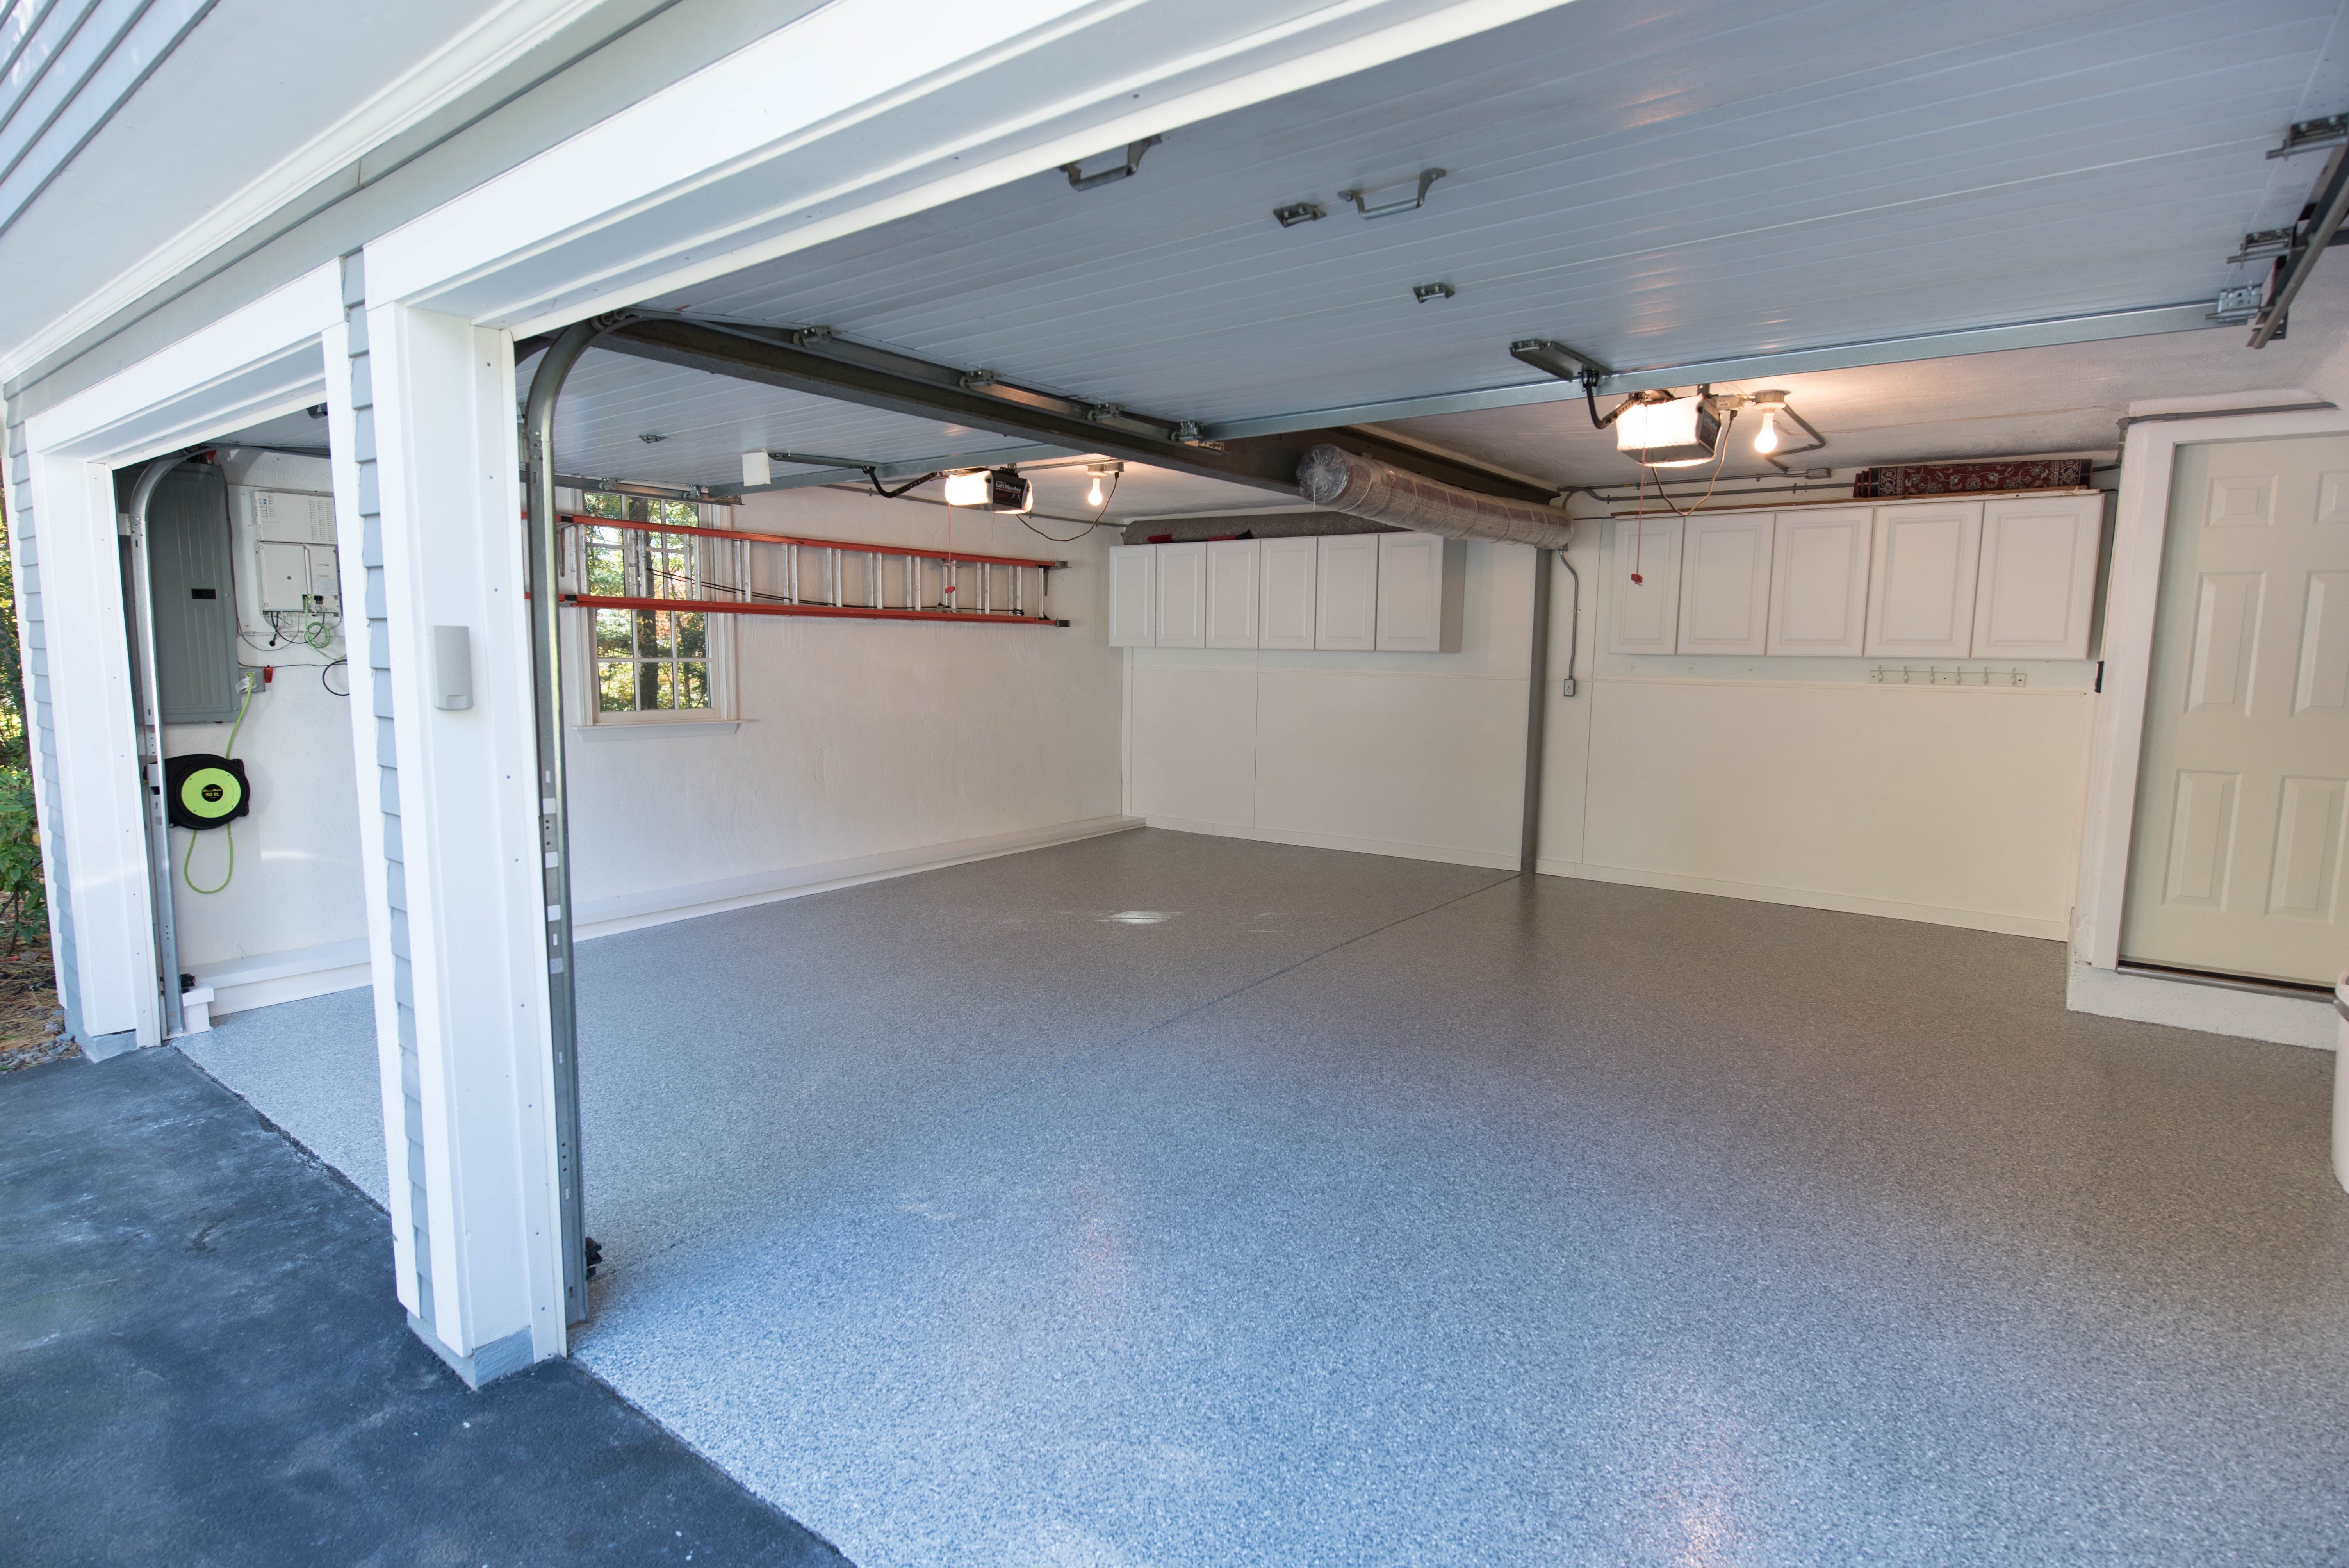 Garage floor with epoxy coating